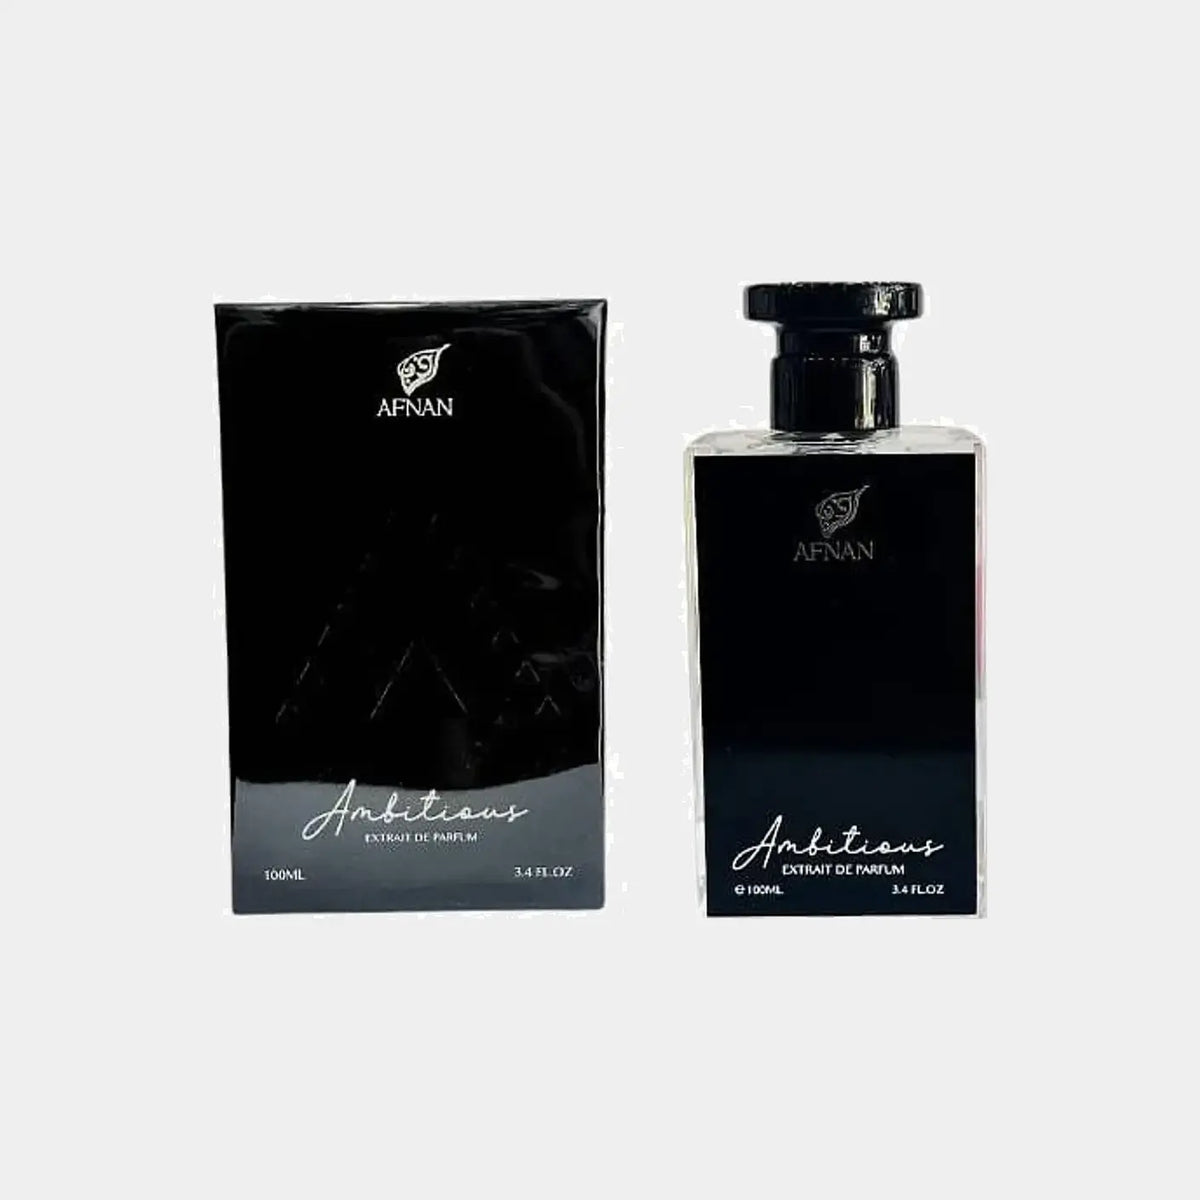 Afnan Ambitious Extrait de parfum - Extrait de parfum, МУЖСКИЕ ДУХИ